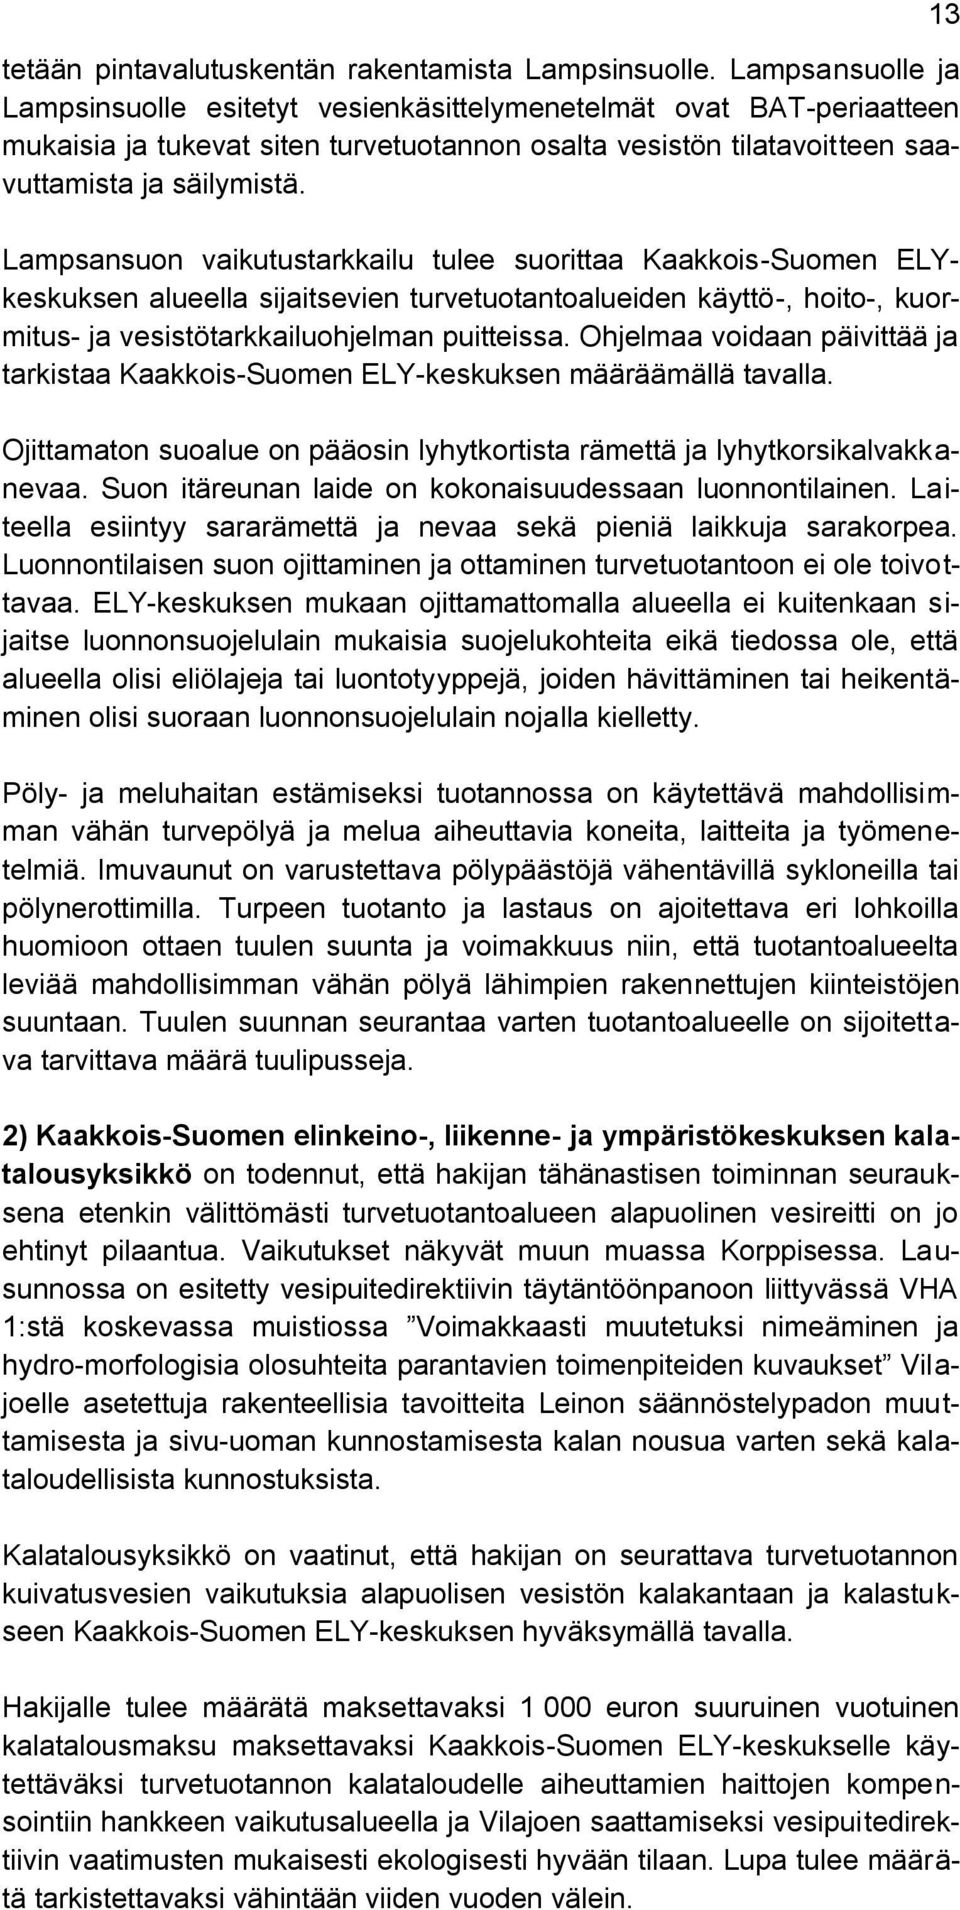 Lampsansuon vaikutustarkkailu tulee suorittaa Kaakkois-Suomen ELYkeskuksen alueella sijaitsevien turvetuotantoalueiden käyttö-, hoito-, kuormitus- ja vesistötarkkailuohjelman puitteissa.